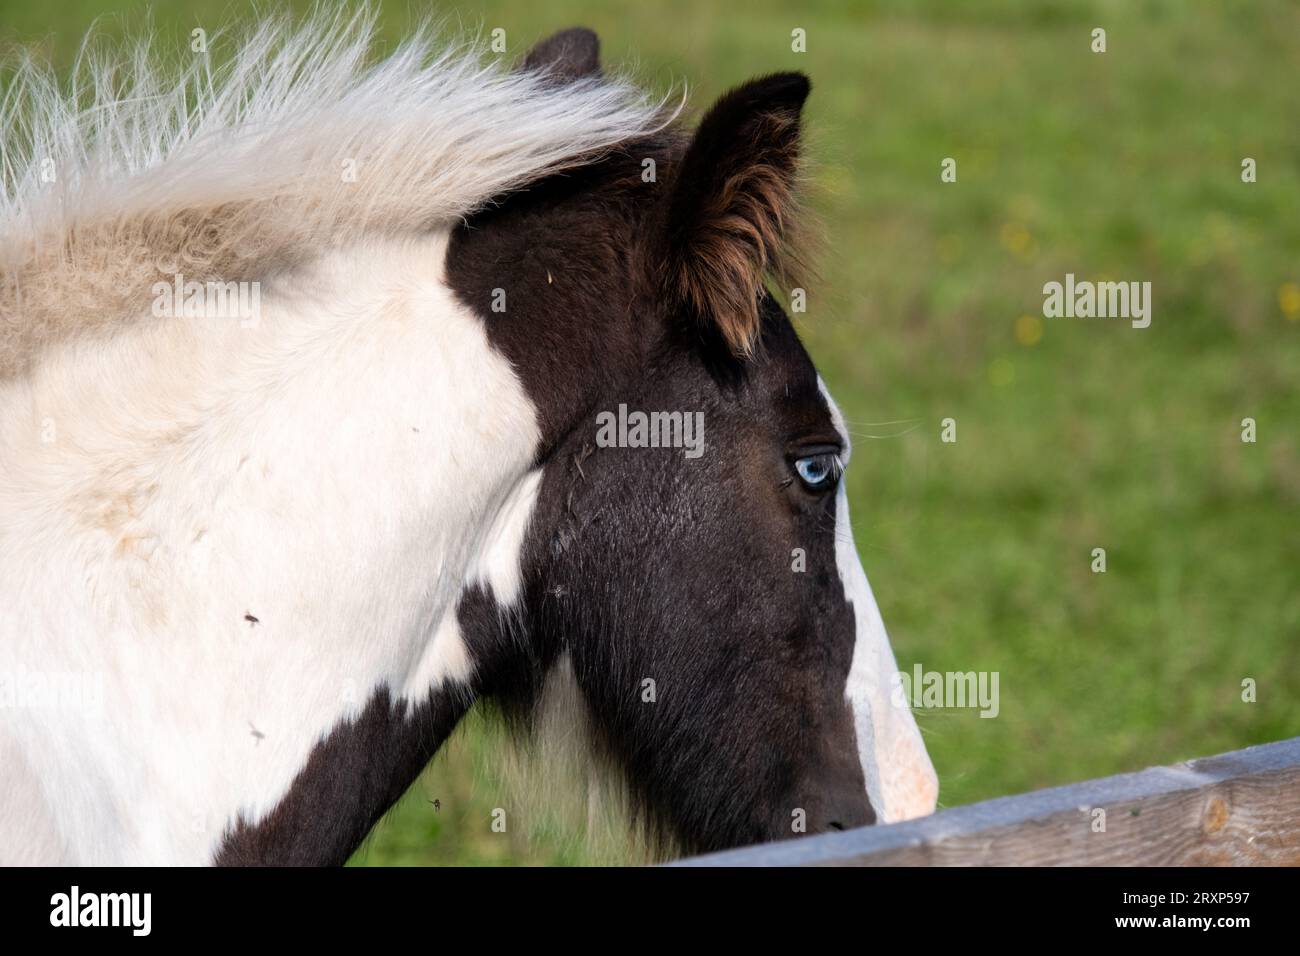 Zig dagli occhi blu. Ritratto laterale di un cavallo. Gli occhi blu sono rari per un cavallo. Un giovane cavallo in un mini zoo privato, dagli occhi azzurri. Foto Stock